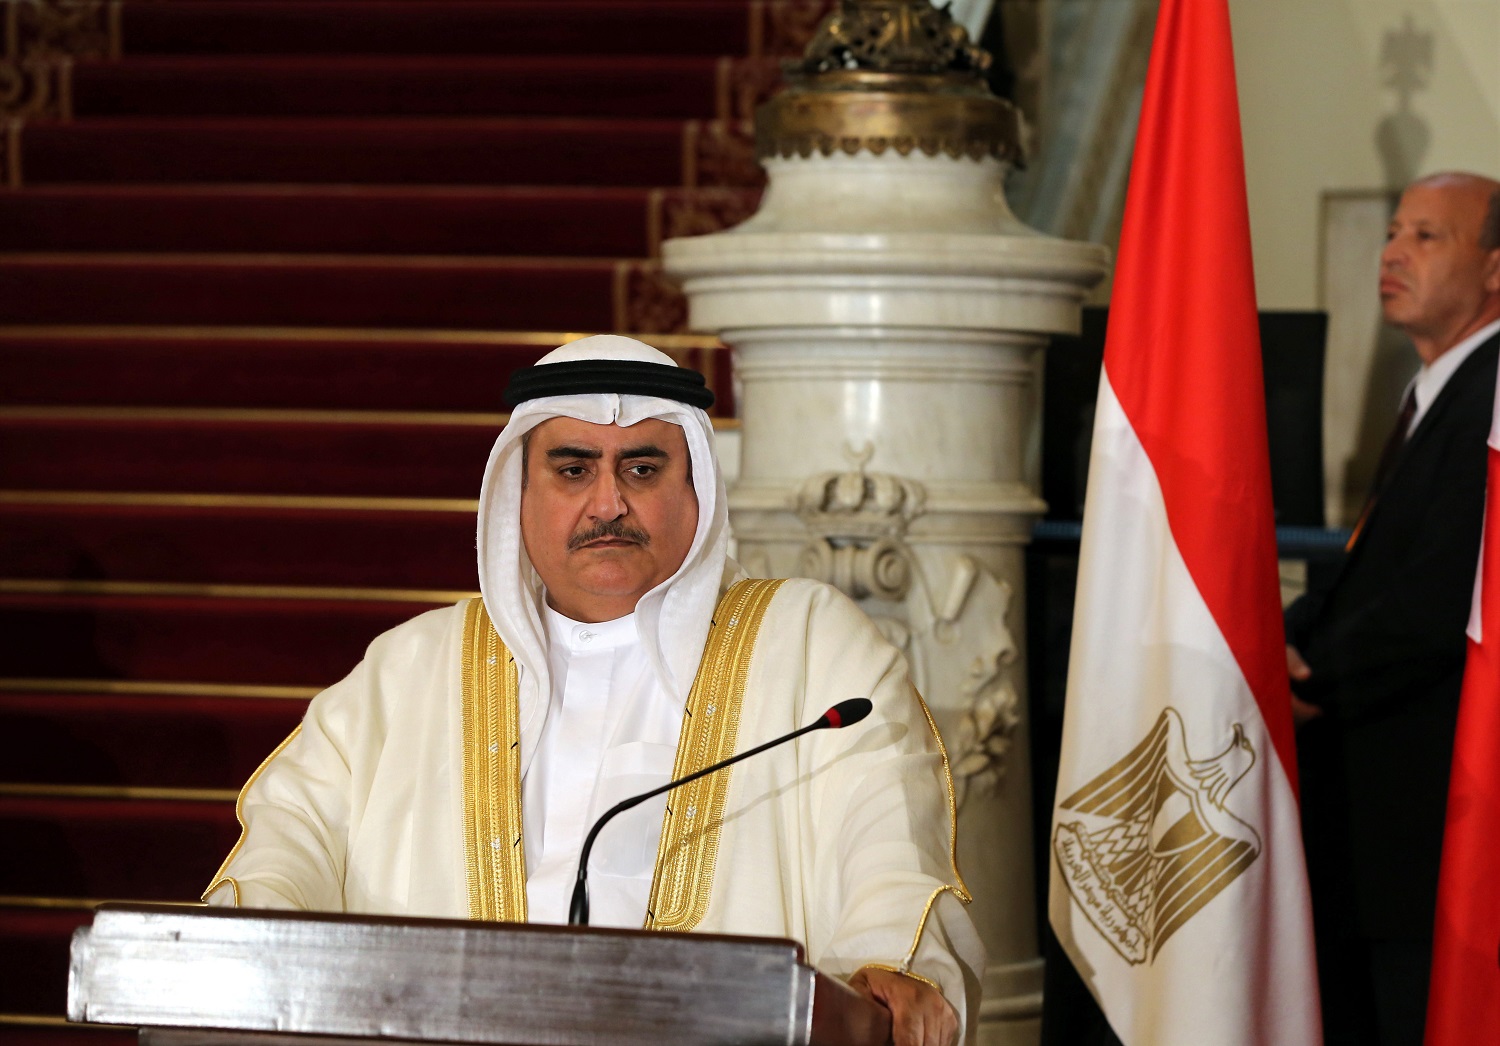 Bahraini Foreign Minister Khalid bin Ahmed Al Khalifa.
